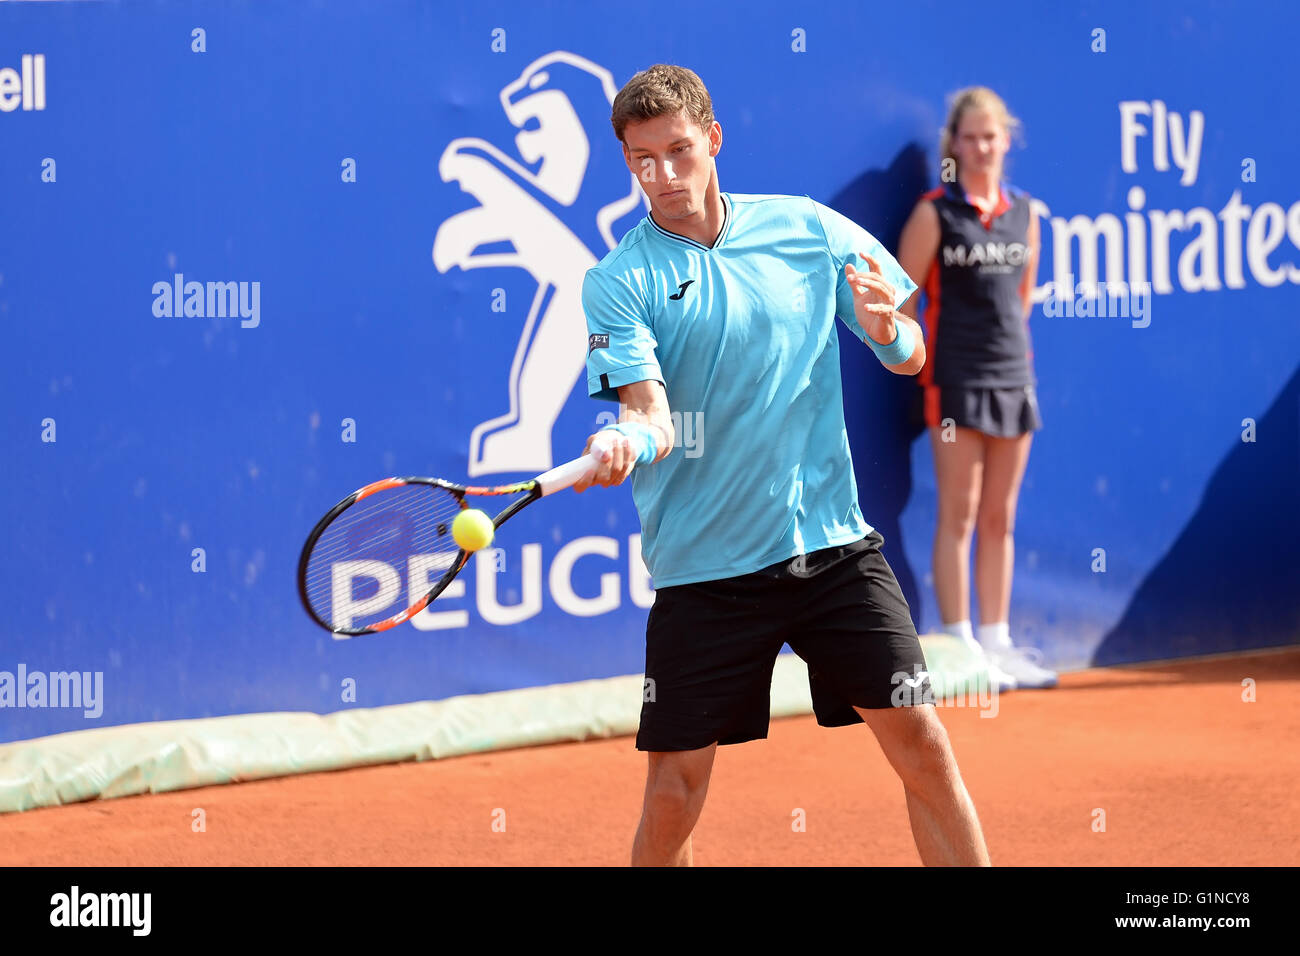 Barcellona - Apr 20: Pablo Carreno Busta (spagnolo giocatore di tennis) svolge in ATP Barcellona. Foto Stock